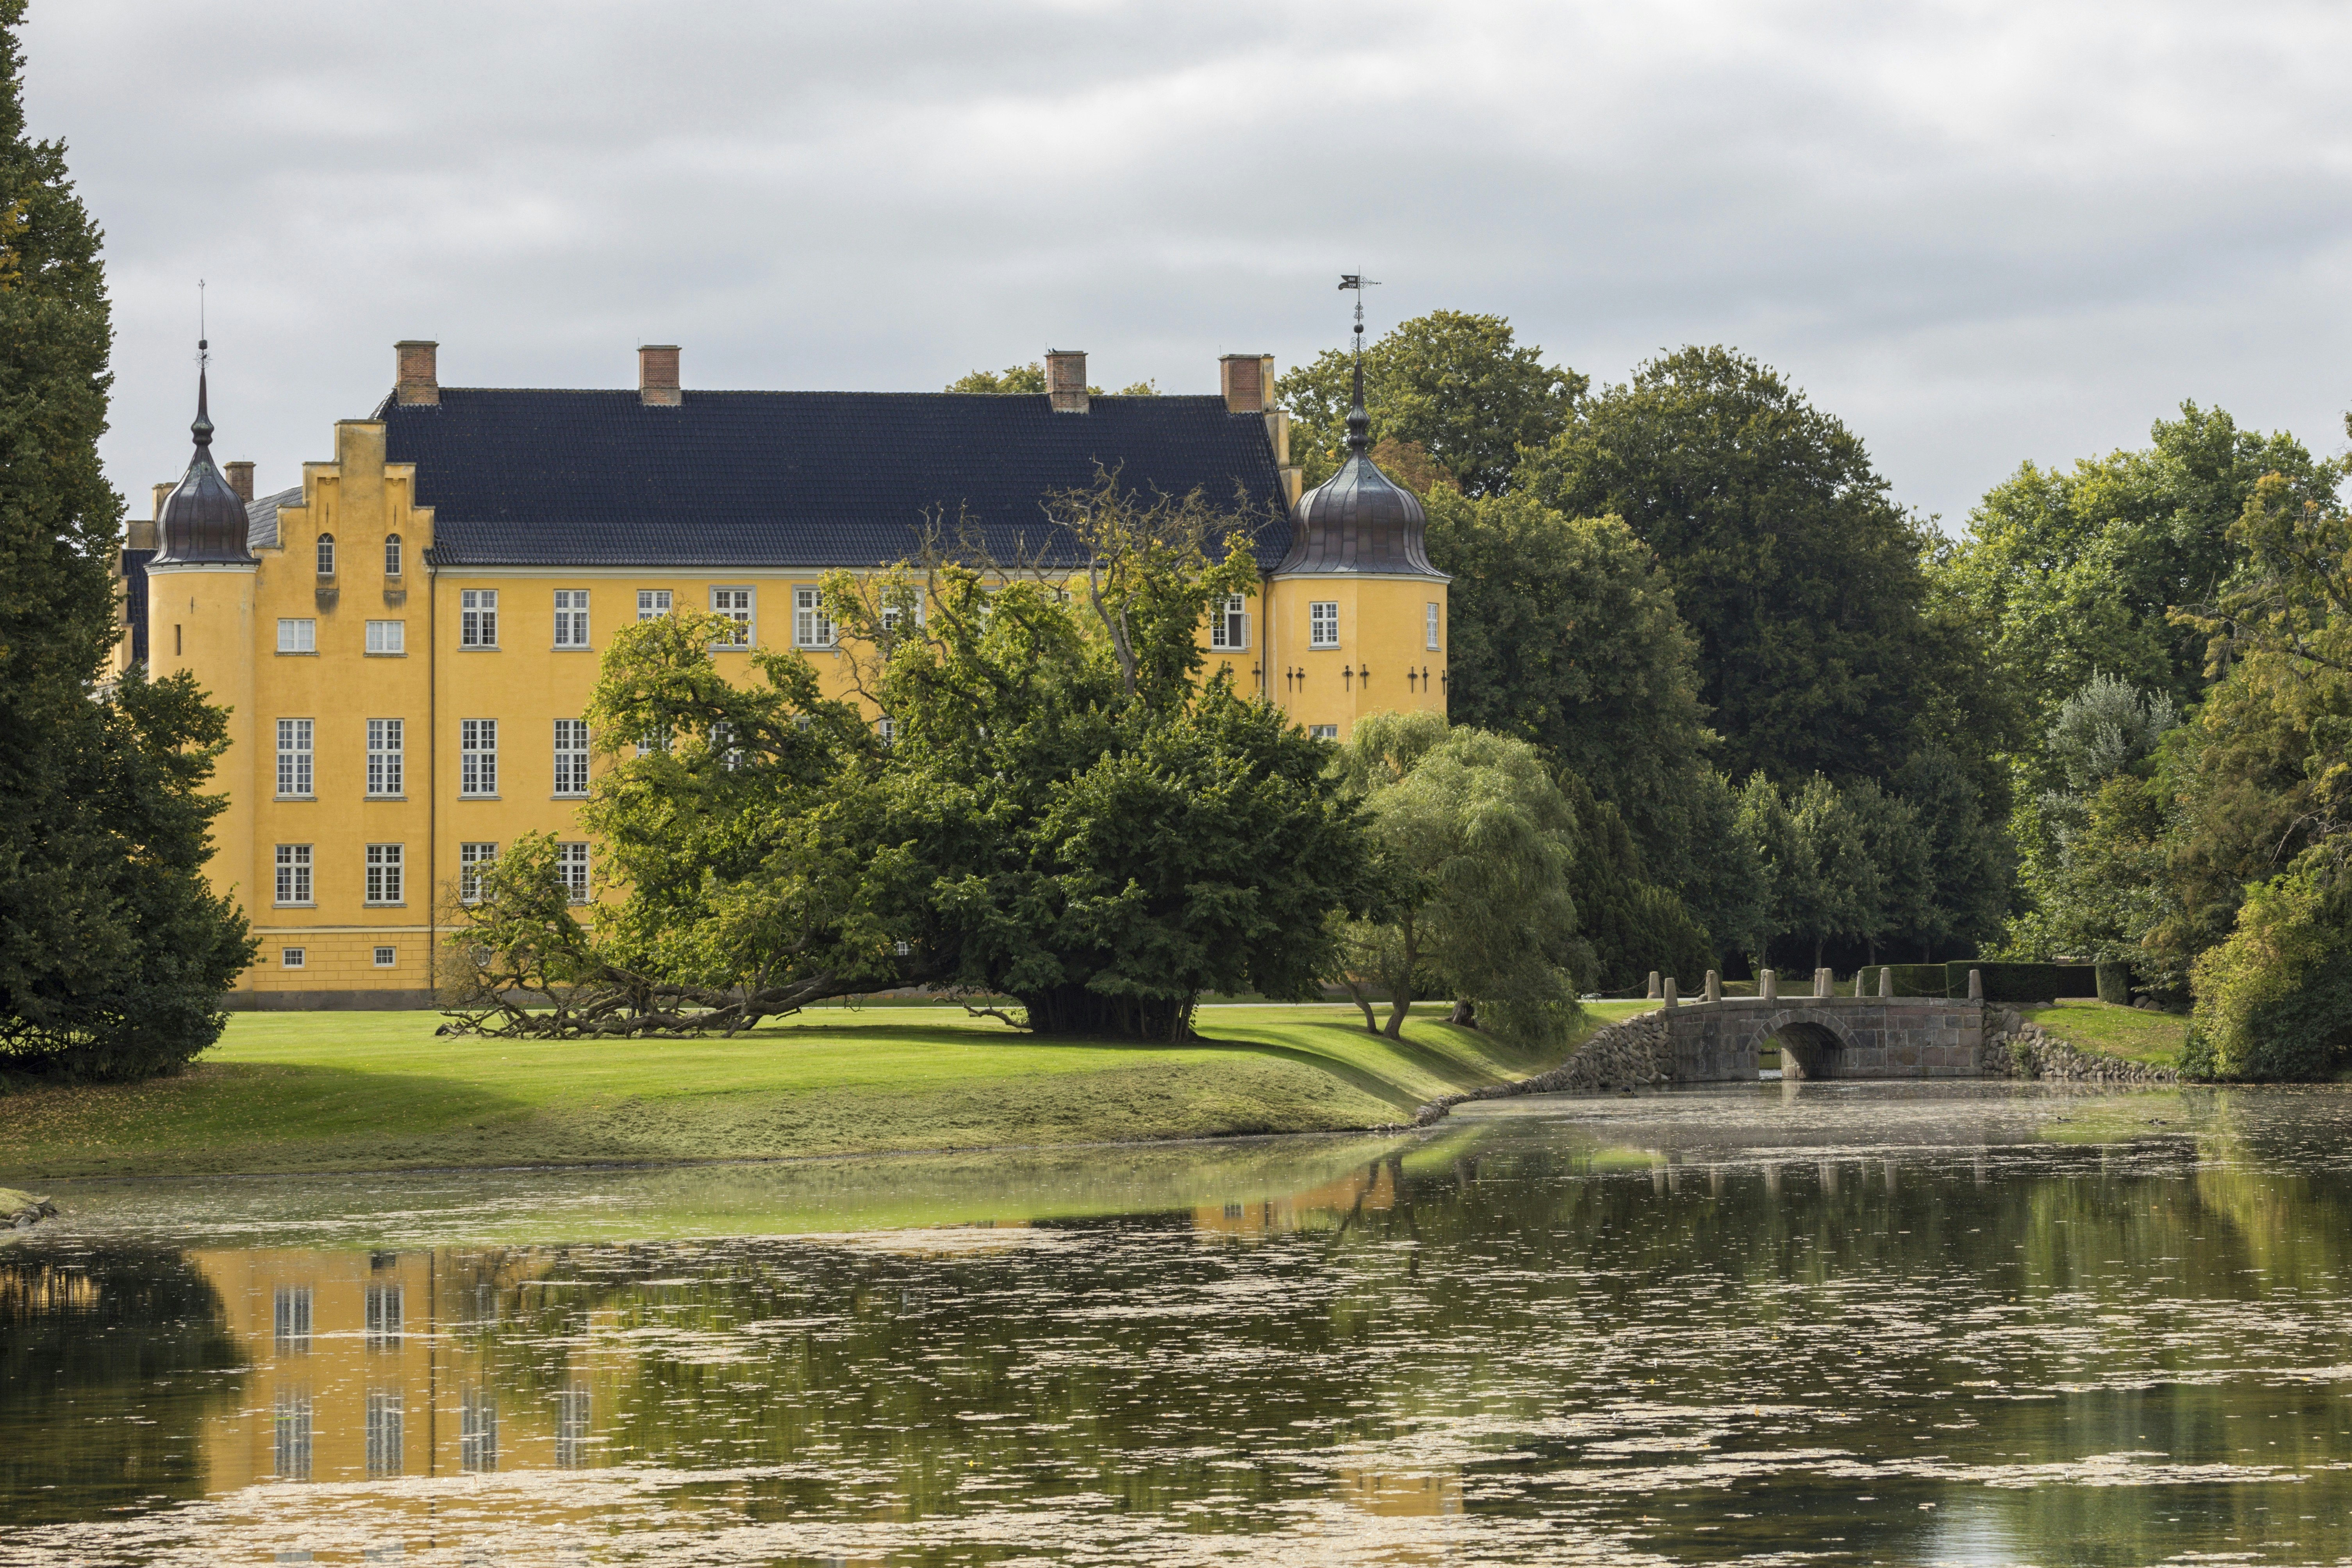 Sakskøbing, Denmark – September 13, 2021: Castle at Krenkerup Gods originating in 14th century, formerly owned by the Reventlows.